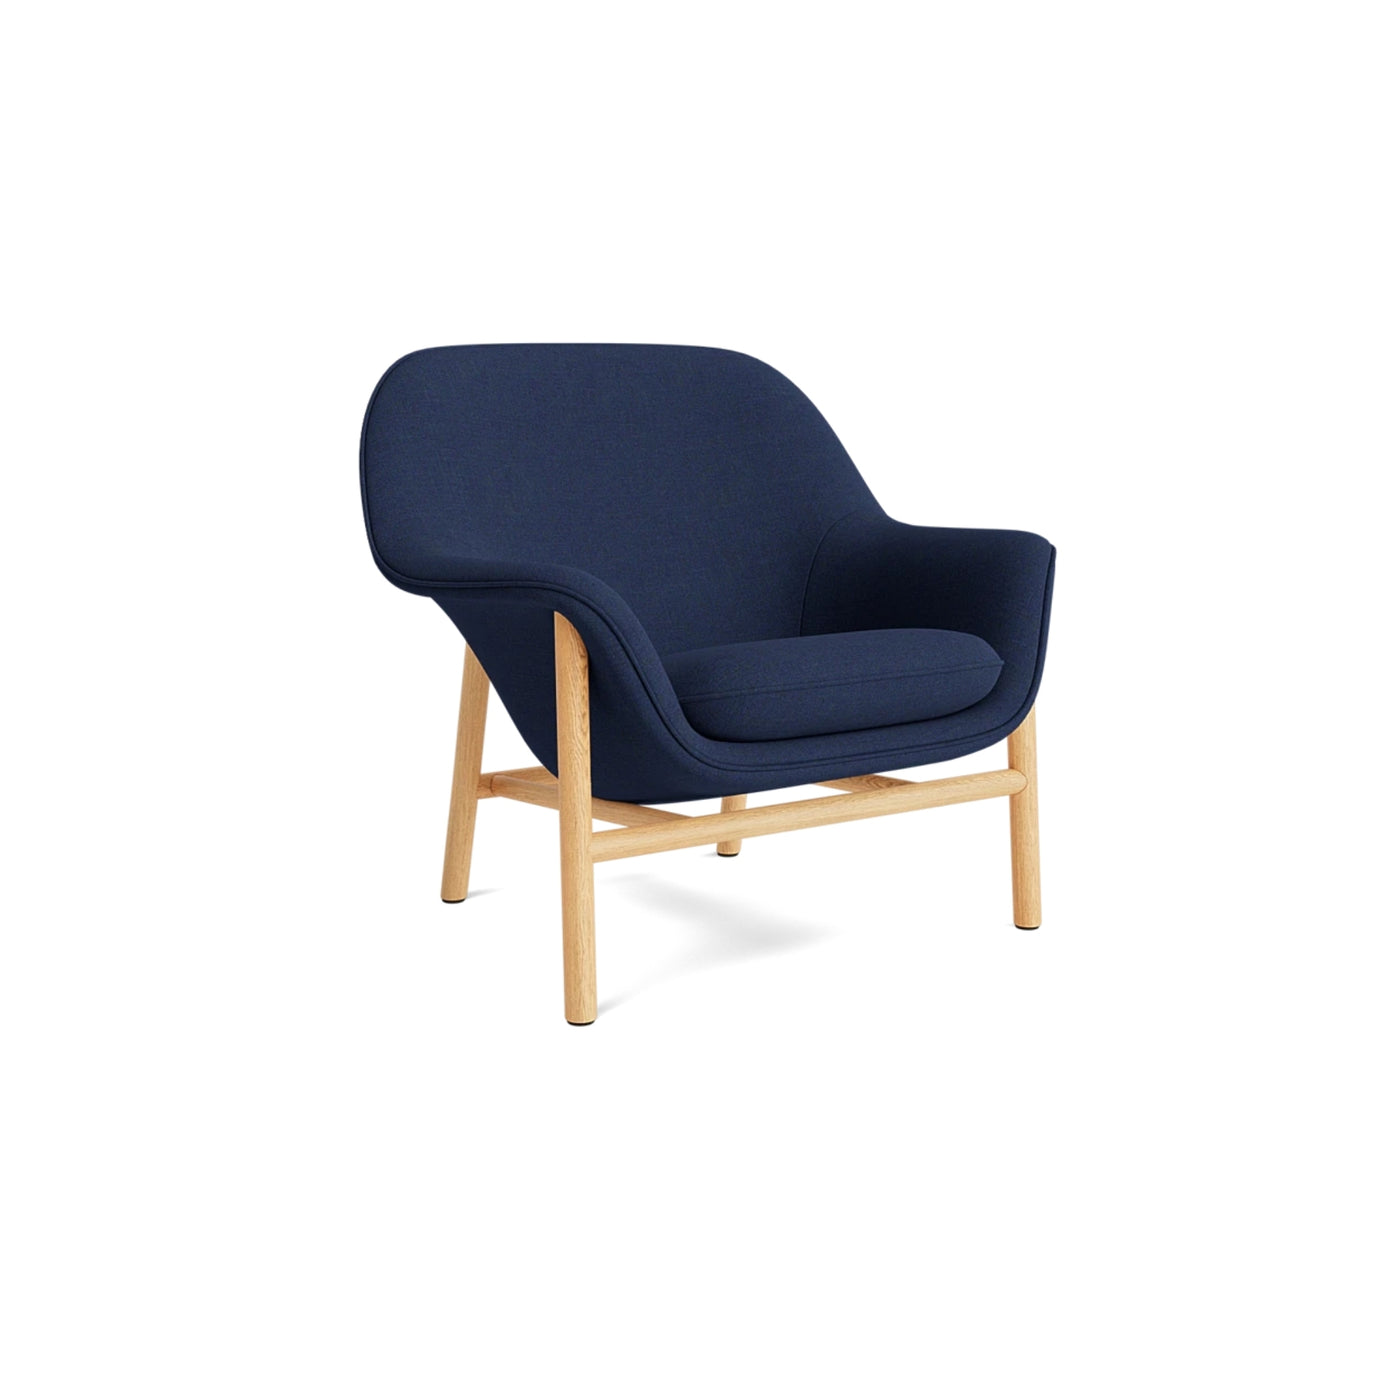 Normann Copenhagen Drape Lounge Chair at someday designs. #colour_remix-773